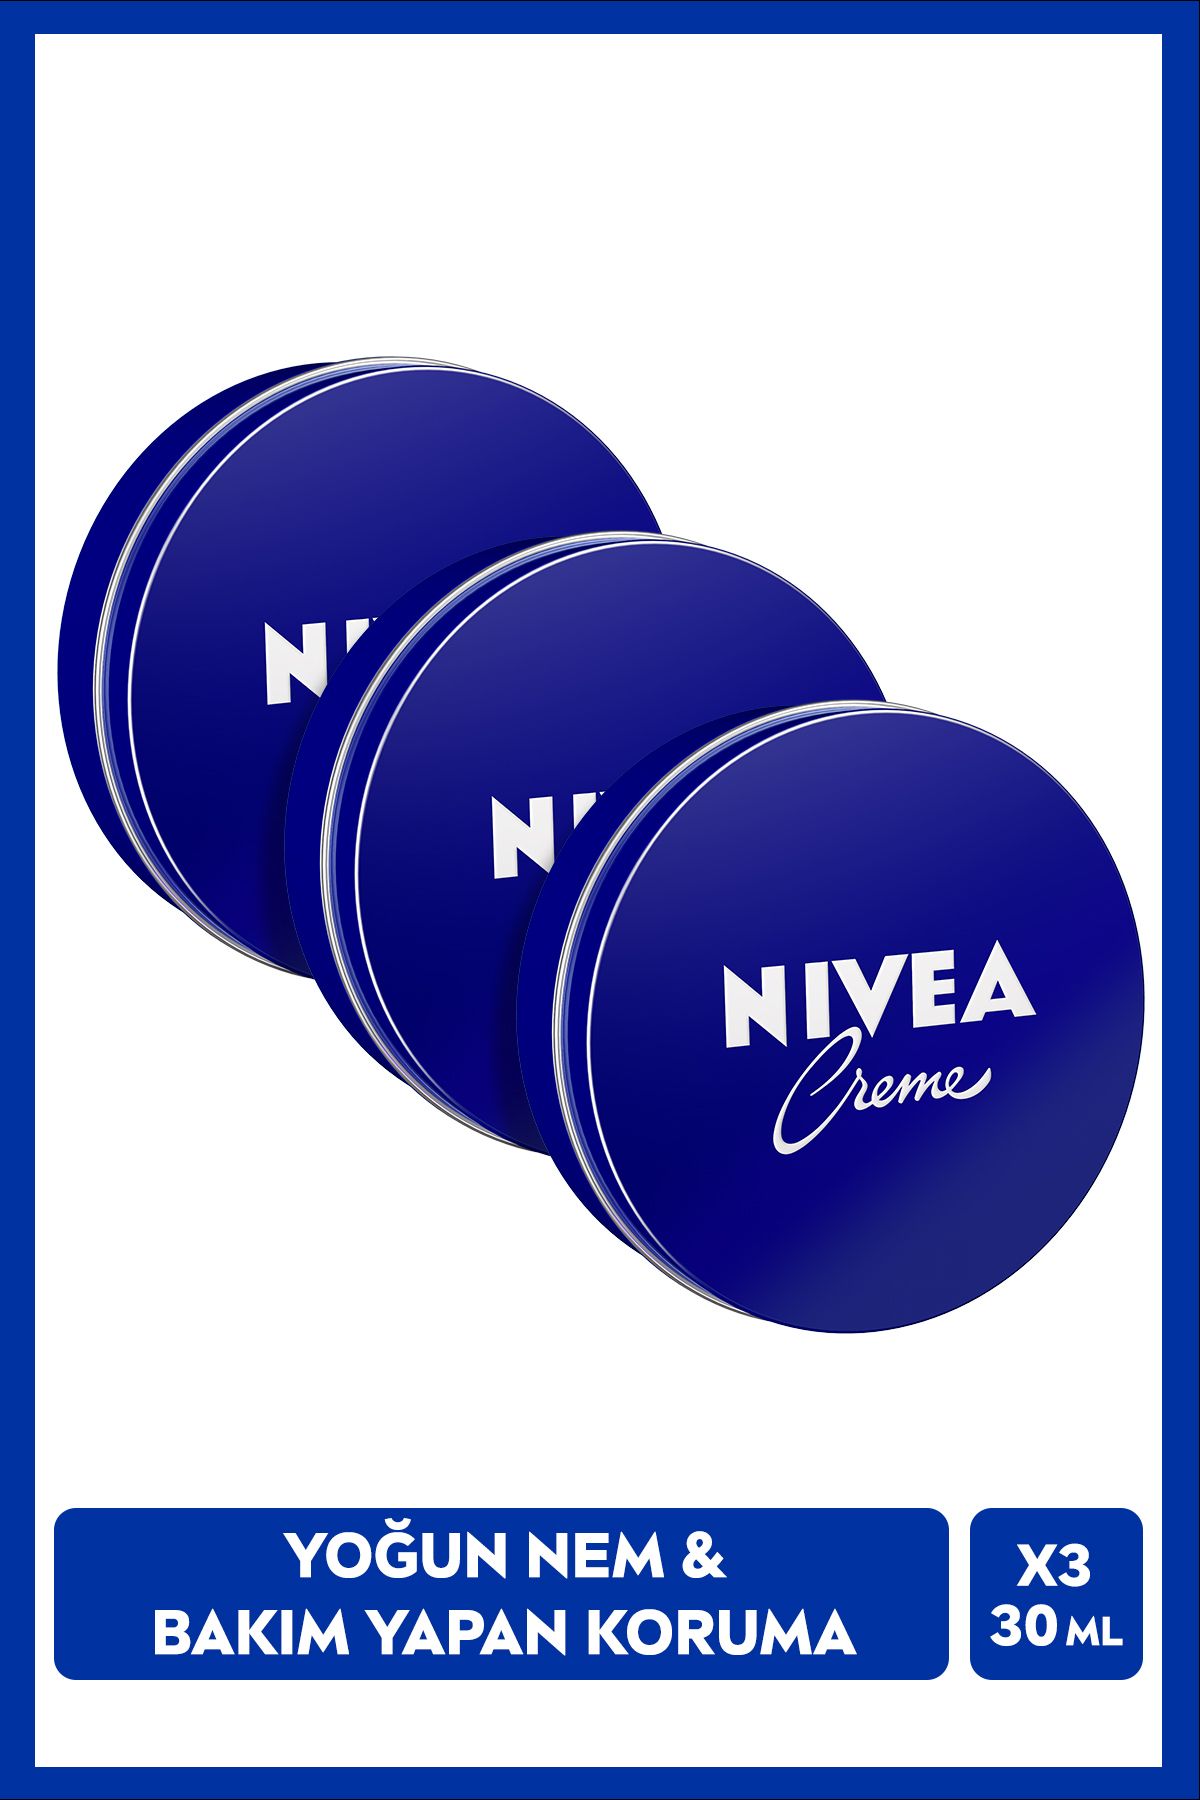 NIVEA Creme 30ml, Bakım Yapan Koruma, Uzun Süreli Yoğun Nemlendirici, El Yüz ve Vücut, X3 Adet